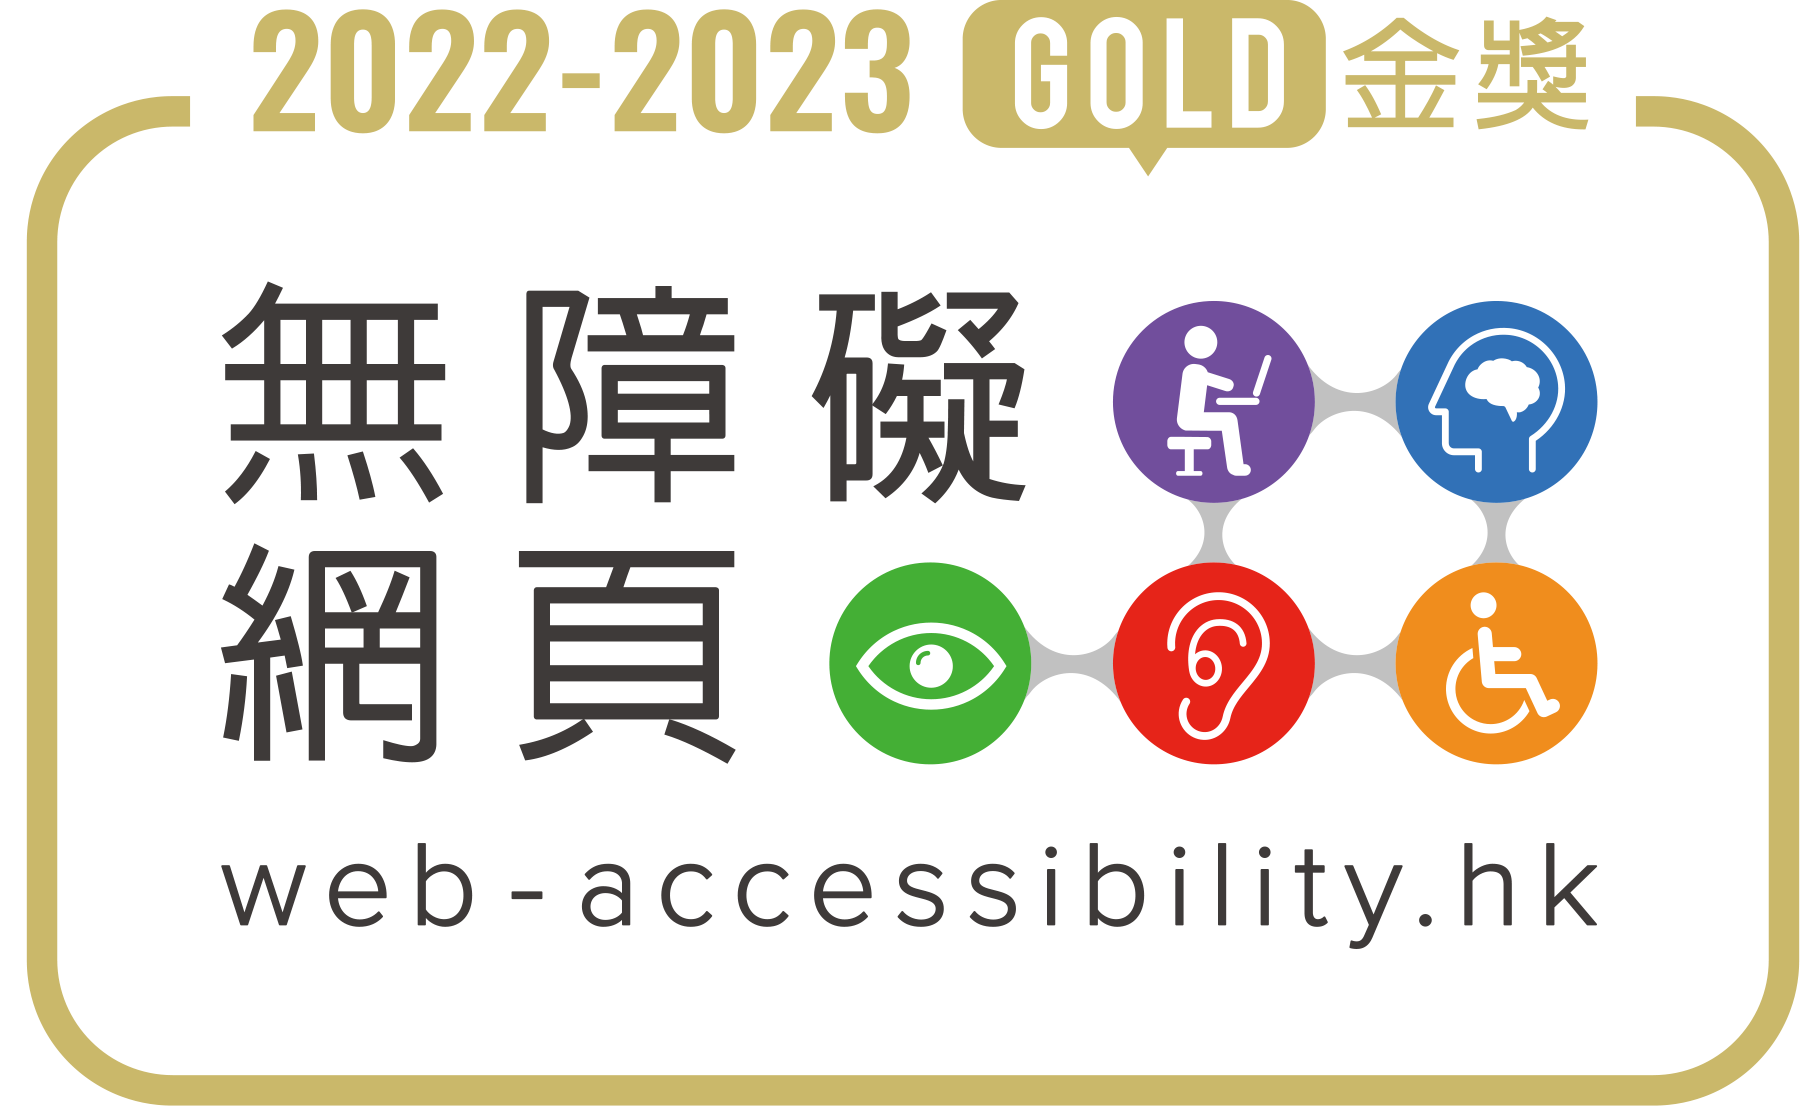 2022-2023 無障礙網頁嘉許計劃 - 金獎級別